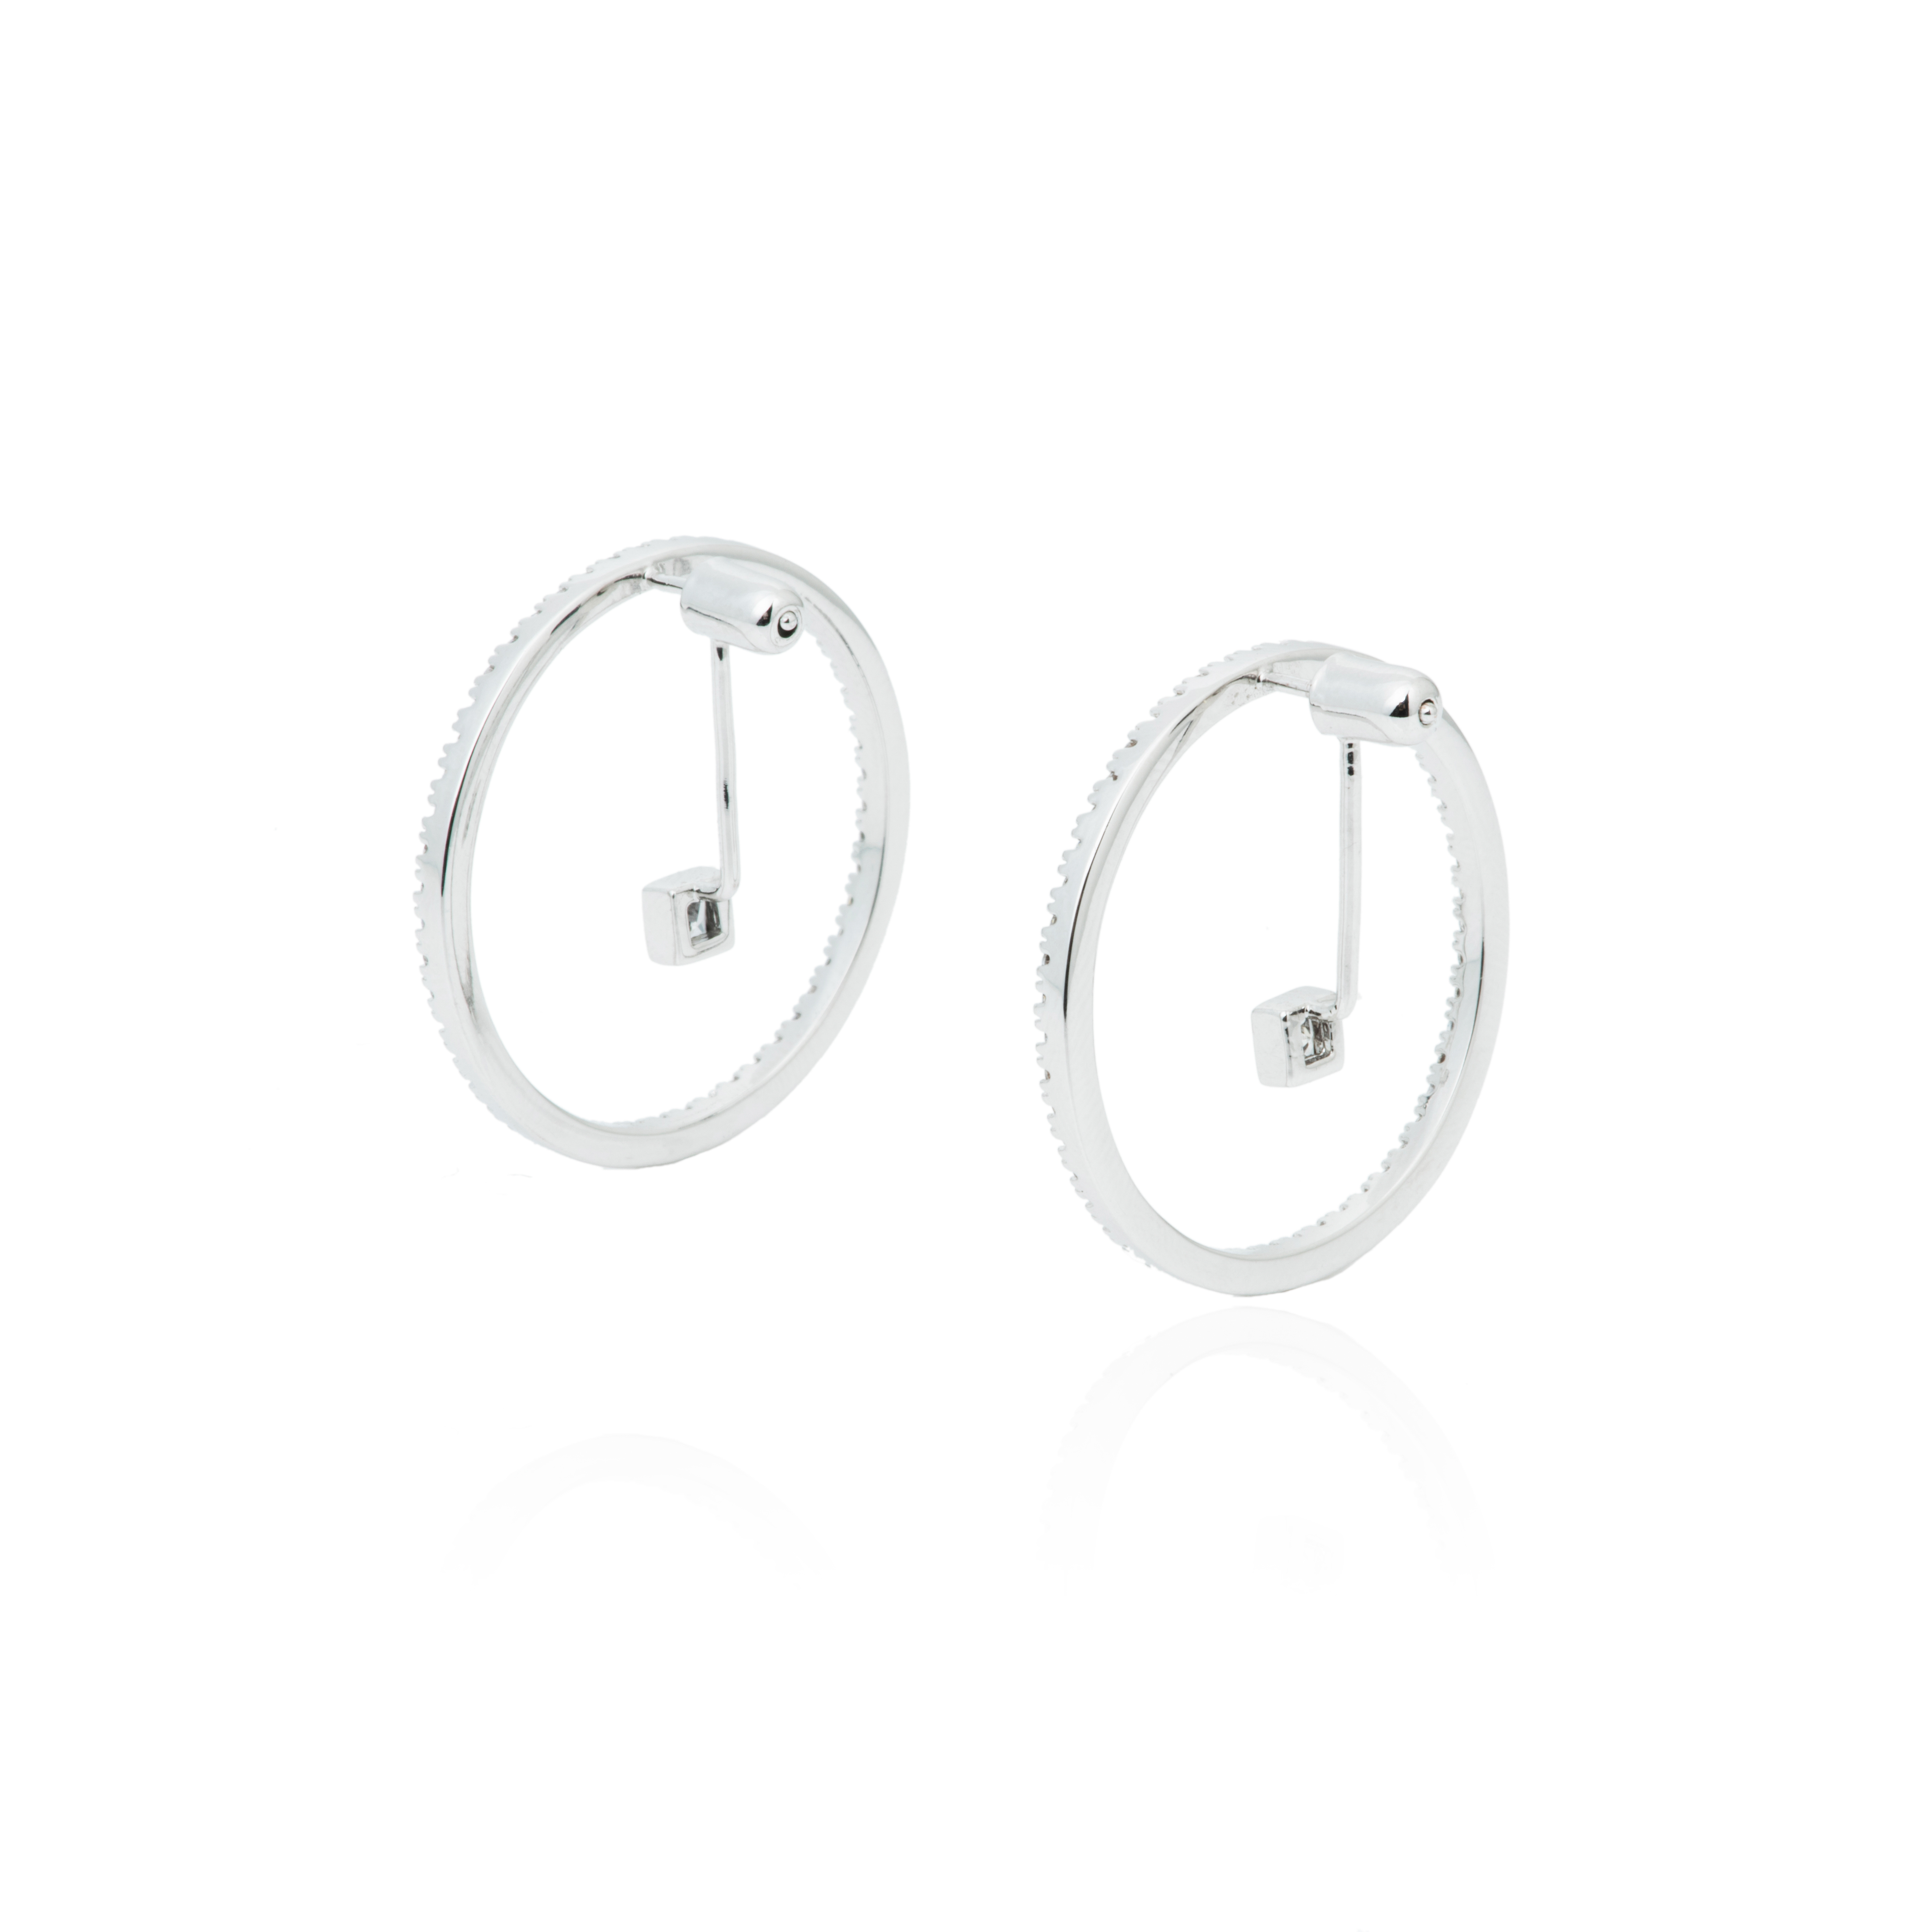 Hoop Earings with Small Rhinestone Pendant 1 pair